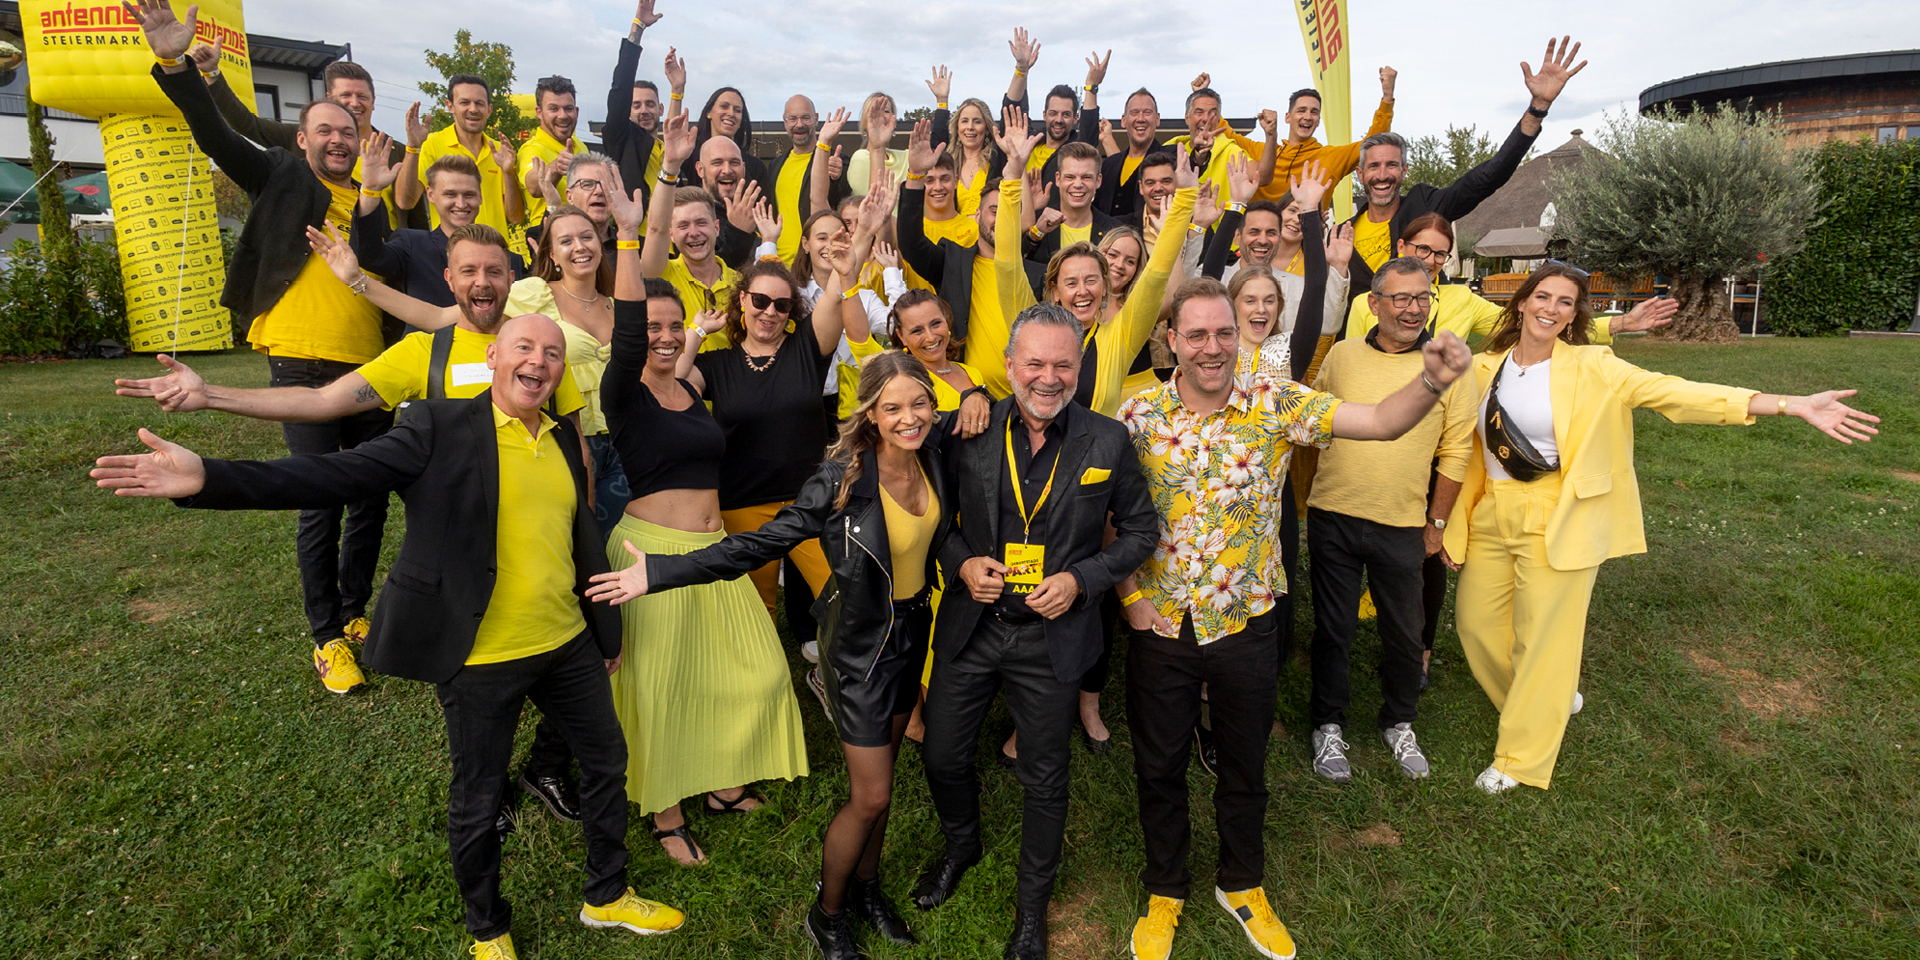 Das gesamte Antenne Steiermark Team feierte mit ihren Hörer:innen eine fulminante Geburtstagsparty